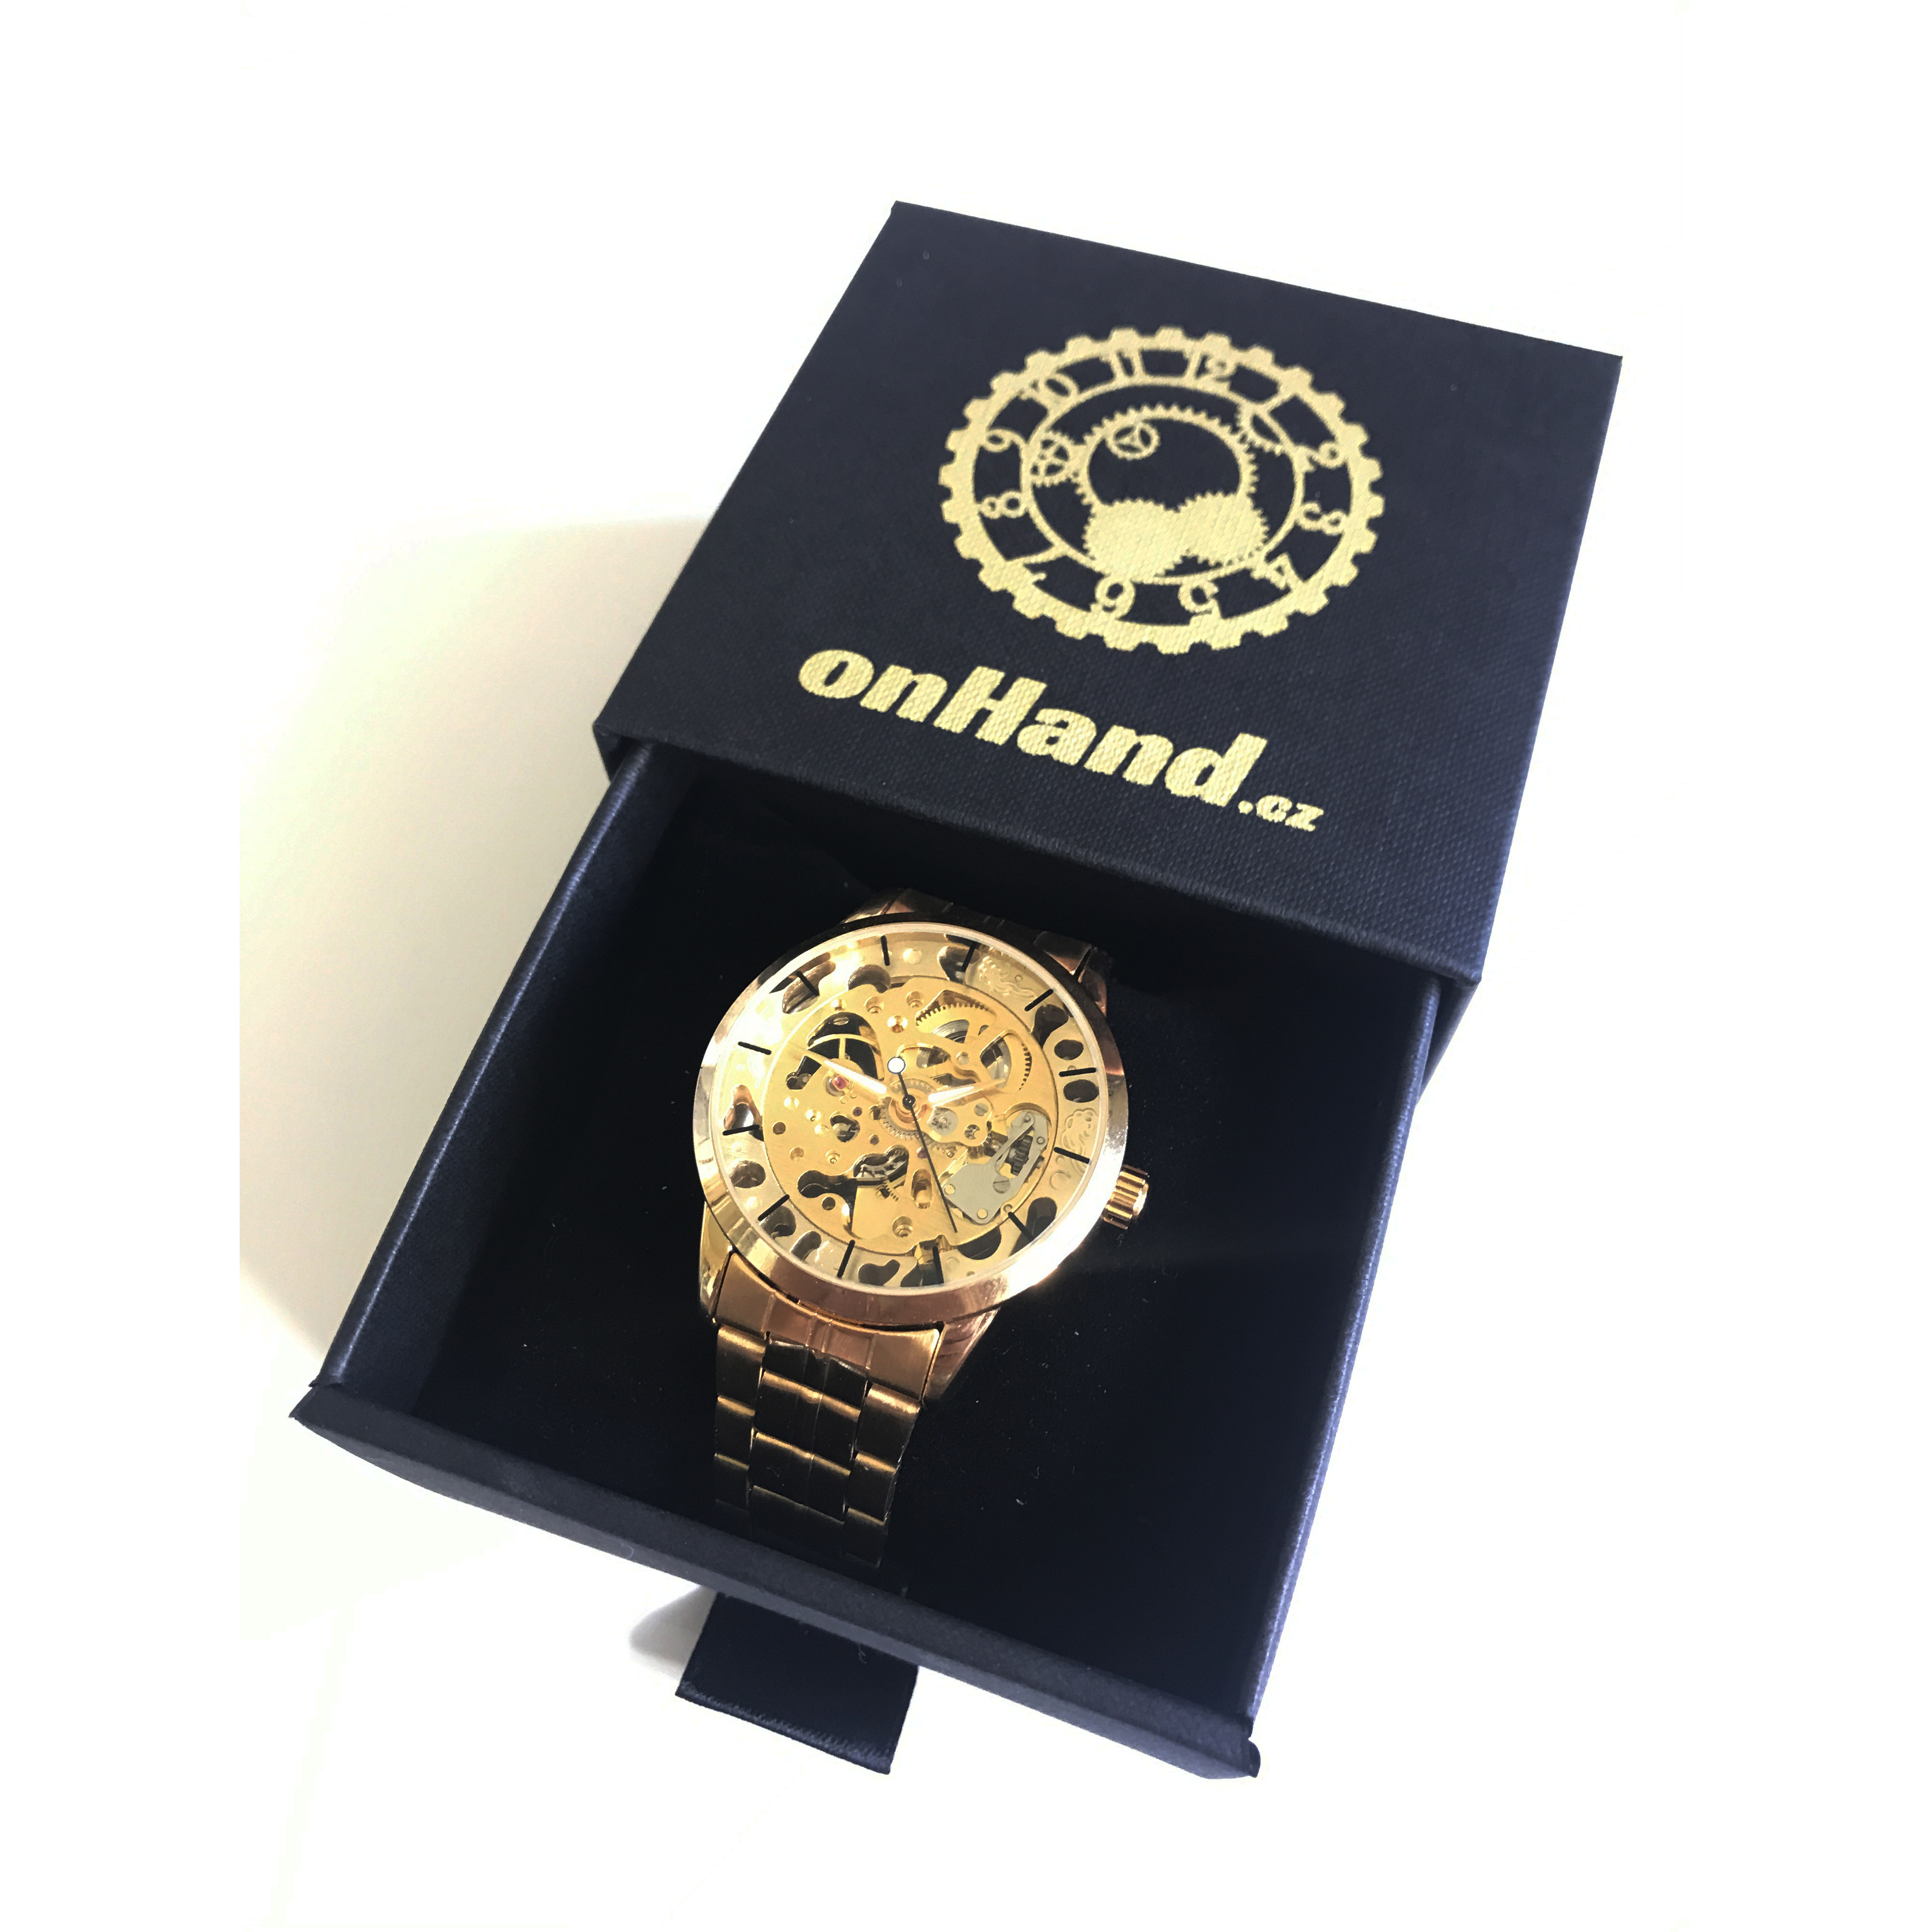 Pánske automatické hodinky EMPEROR v zlatej farbe